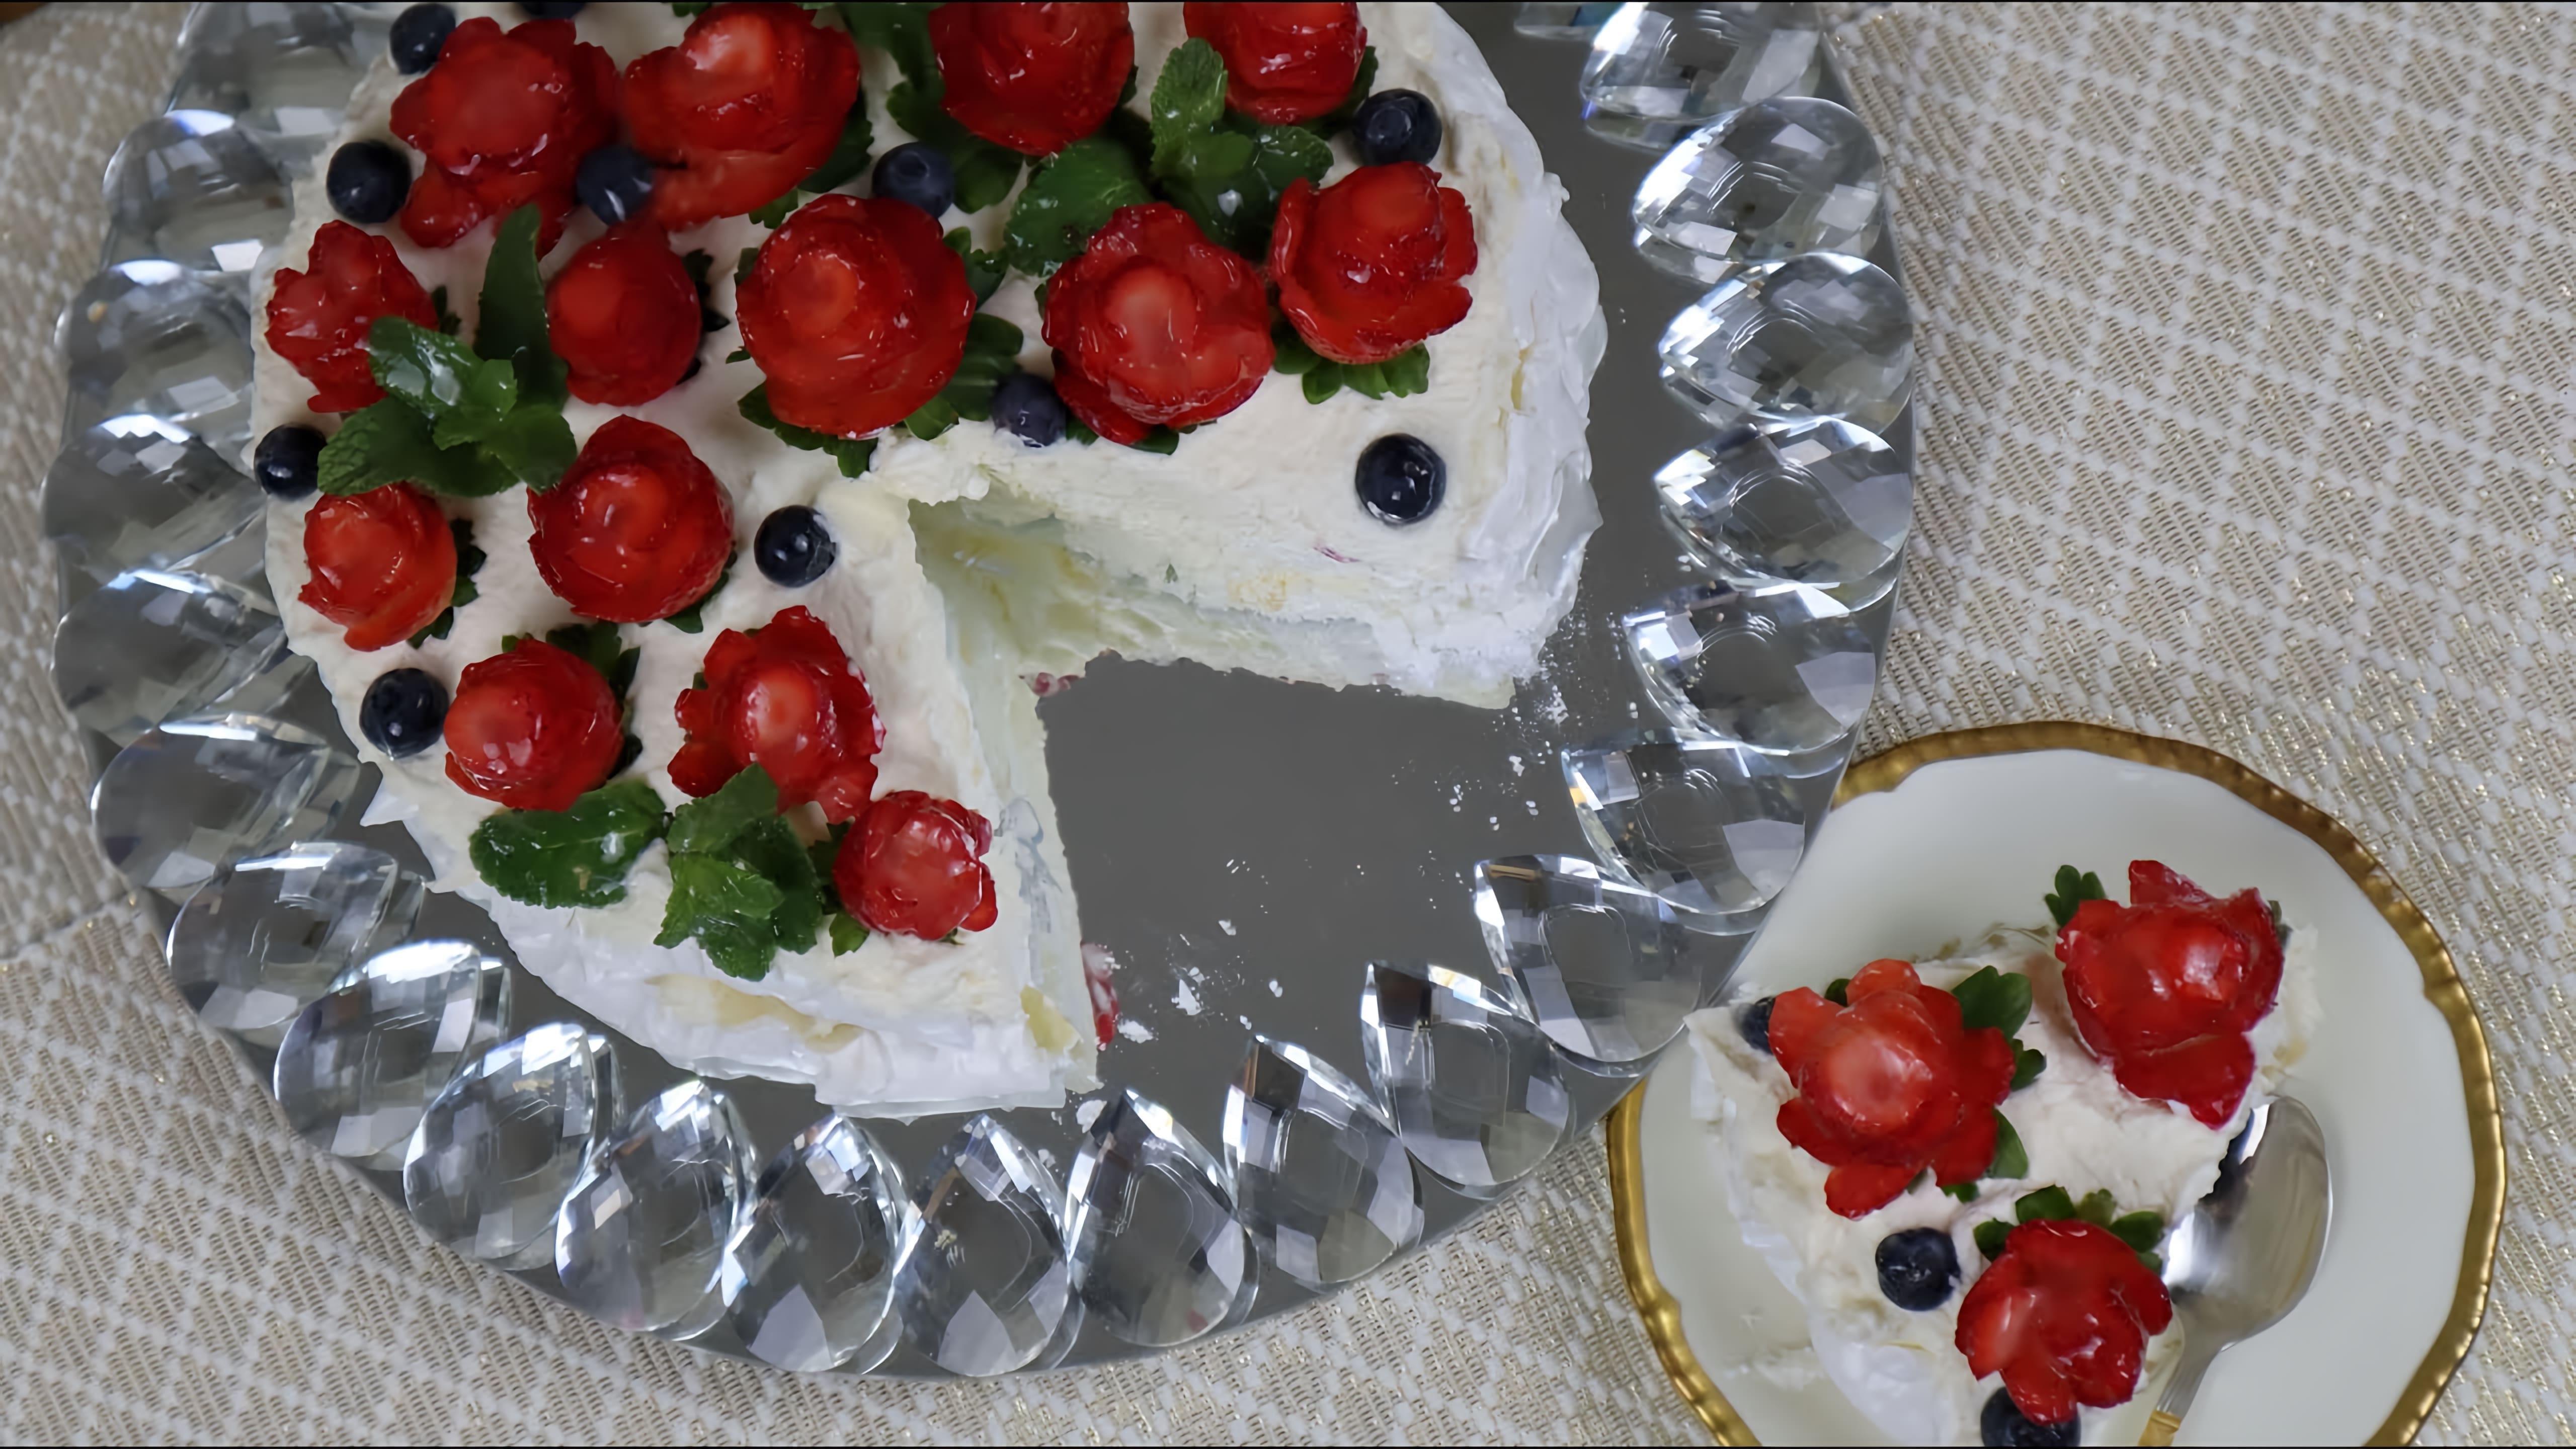 В этом видео показано, как приготовить торт "Анна Павлова" - легкий и воздушный торт из безе